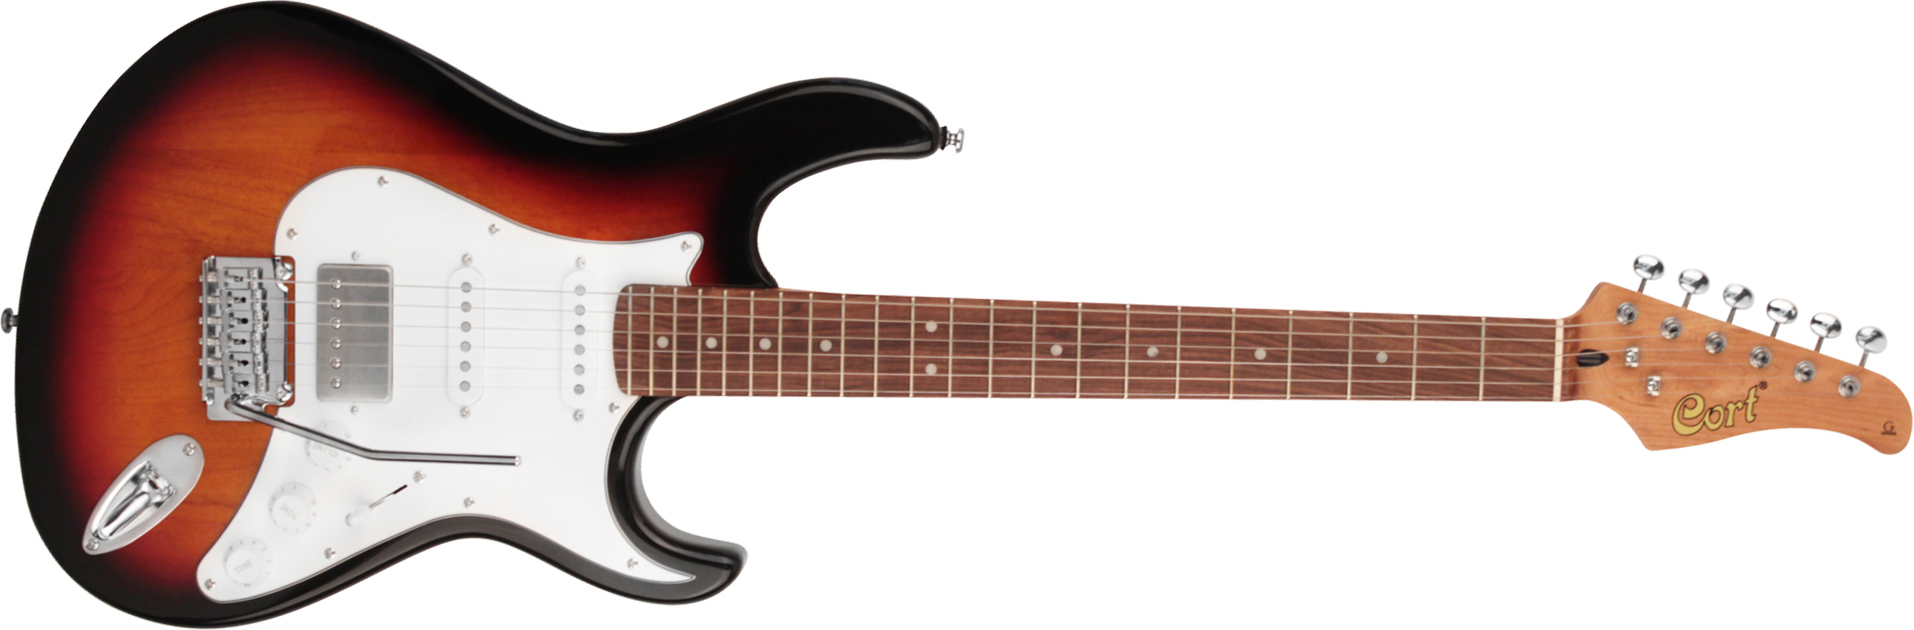 Cort G260cs Hss Trem Pau - 3 Tone Sunburst - Elektrische gitaar in Str-vorm - Main picture